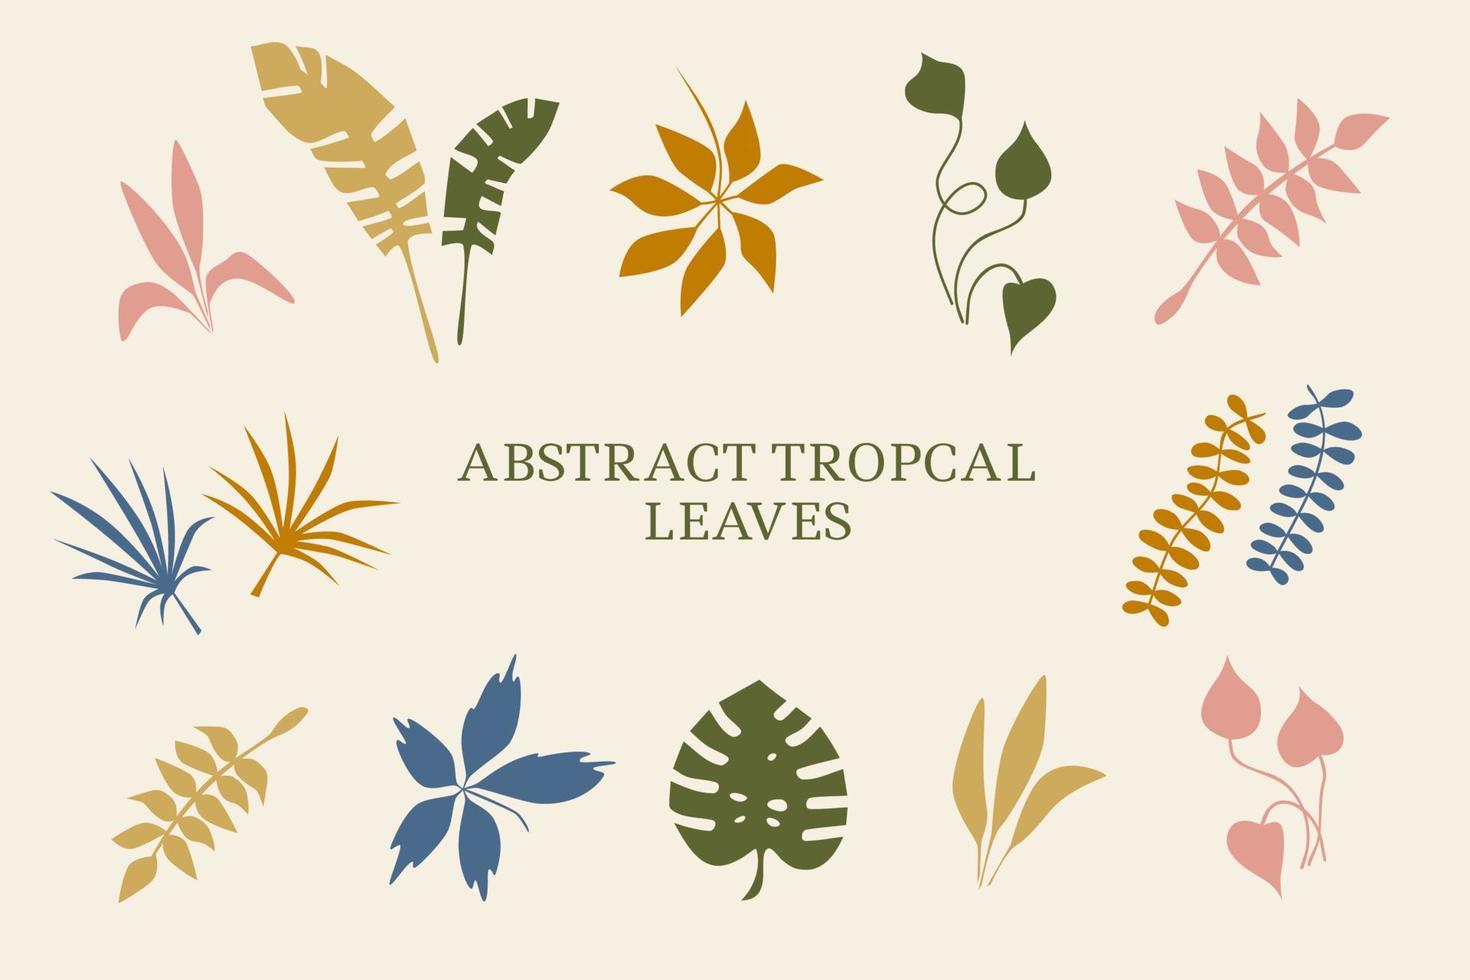 plantas tropicales, hojas. objetos de la naturaleza de verano. selva, estilo moderno y moderno. establecer elementos para el diseño de la ilustración de vector de tarjeta, cartel y banner